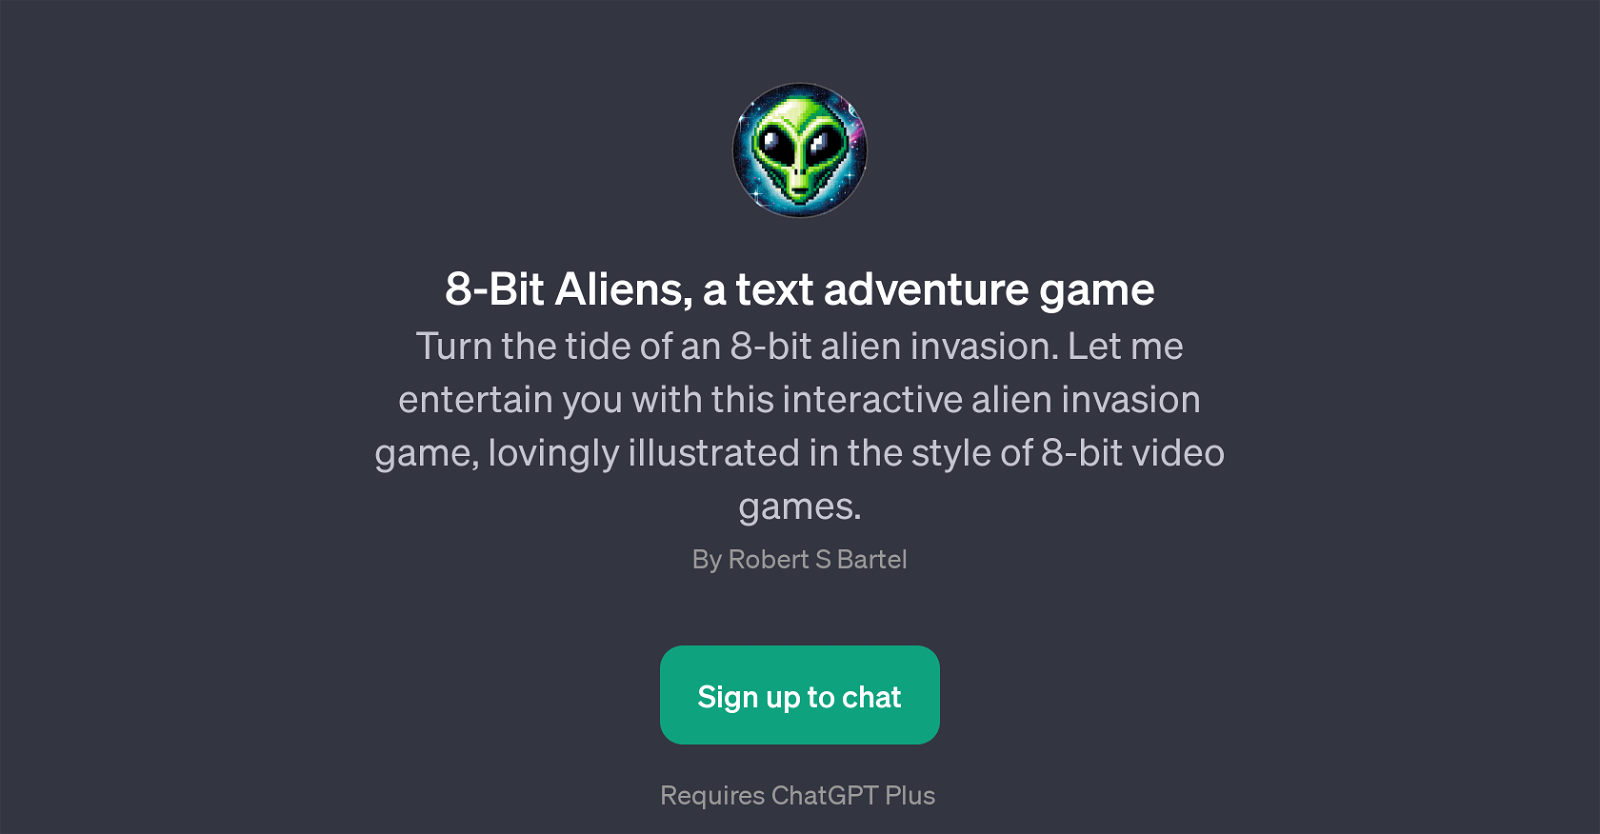 8-Bit Aliens website